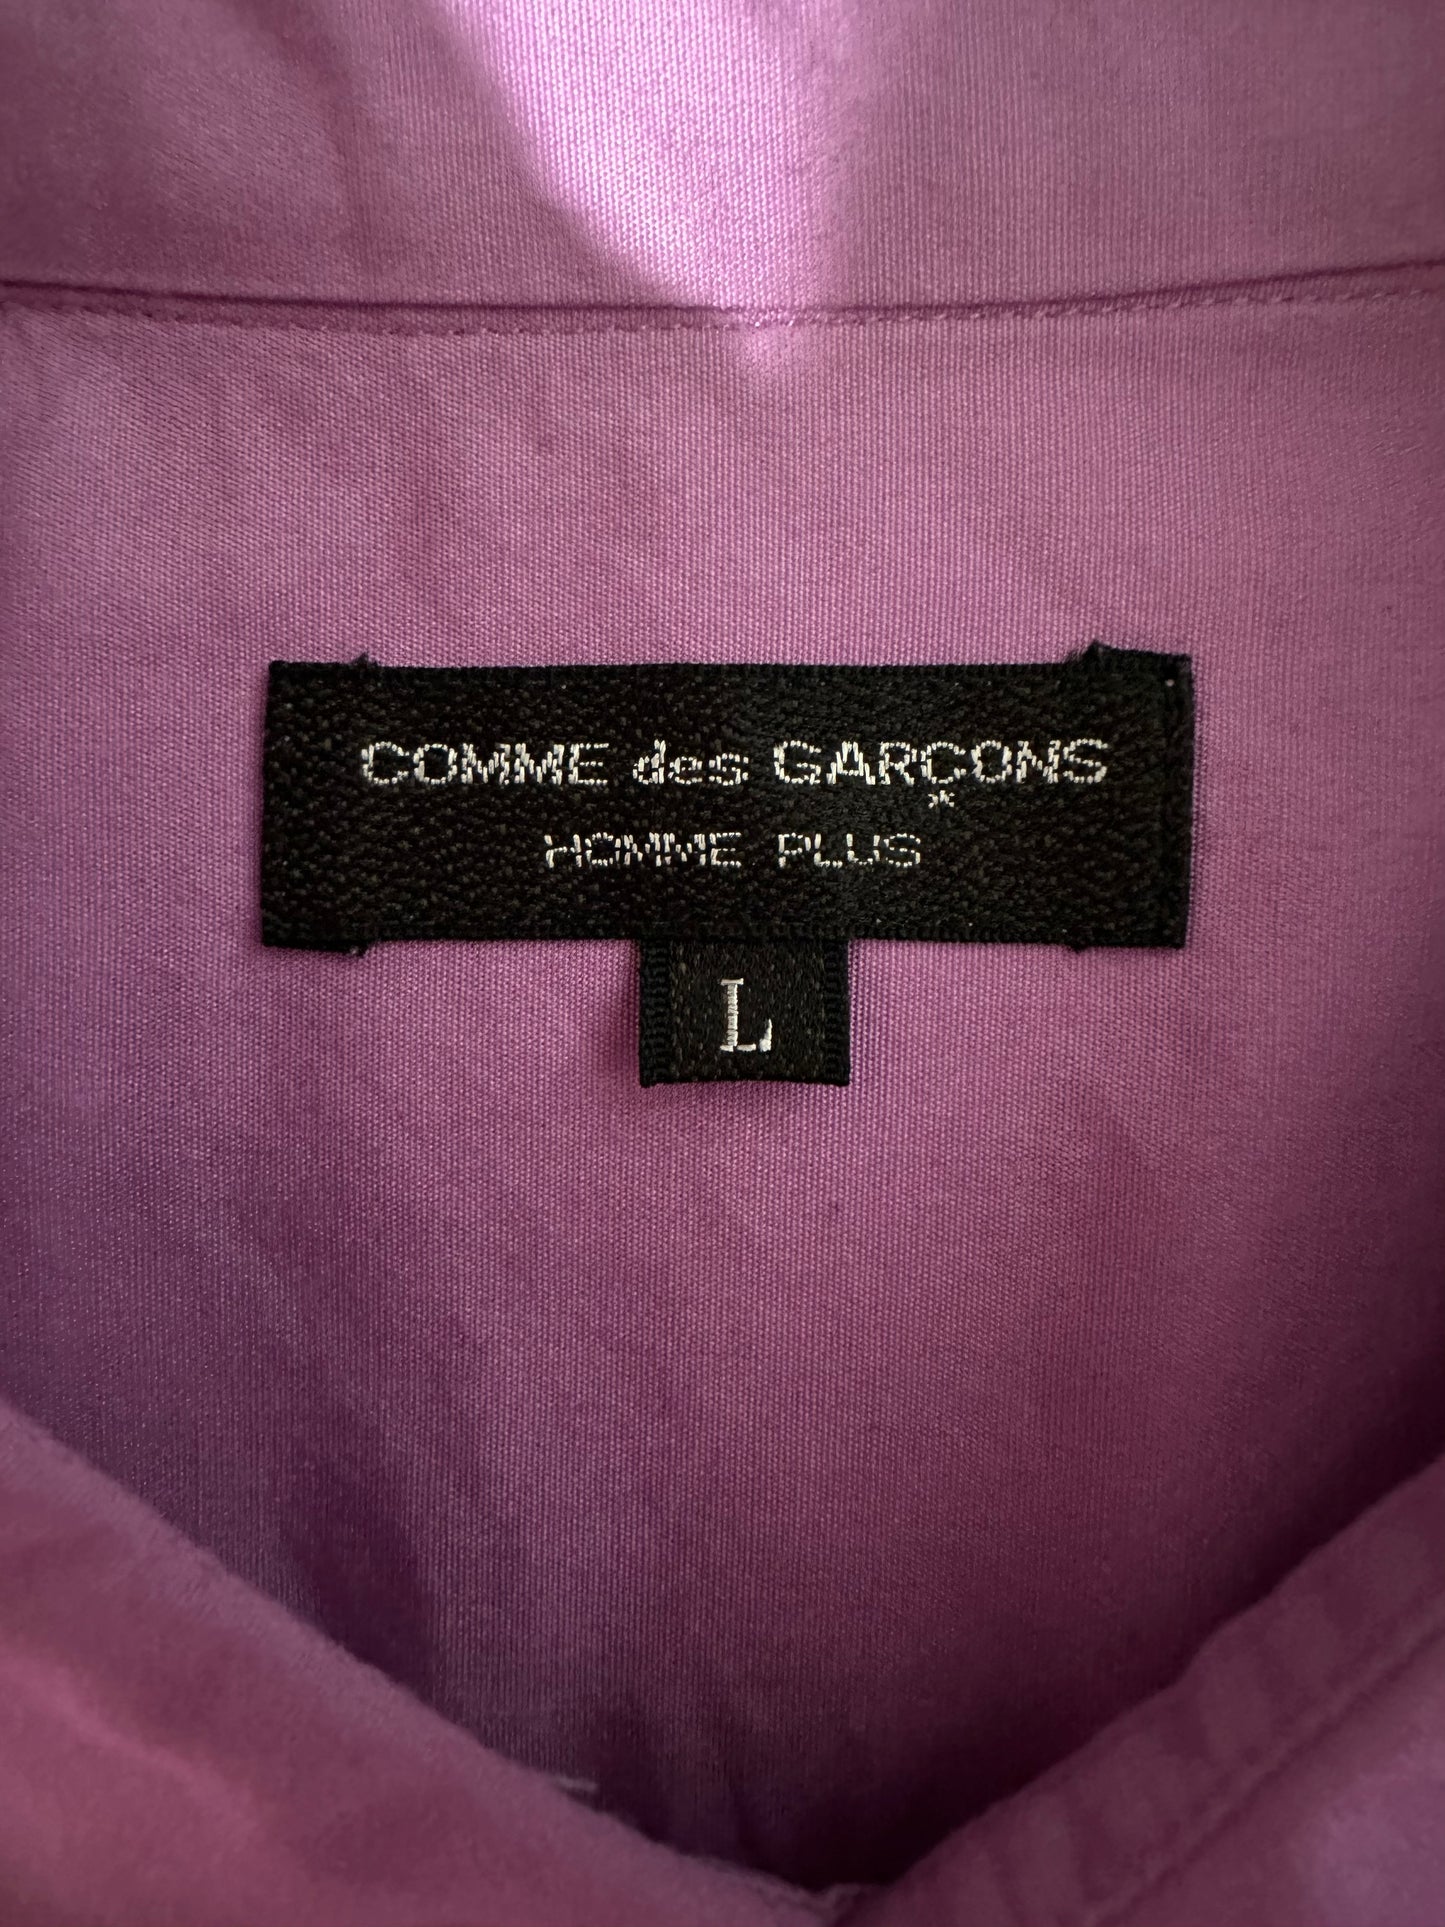 COMME des GARÇONS HOMME PLUS big silhouette collar shirt vintage 90s